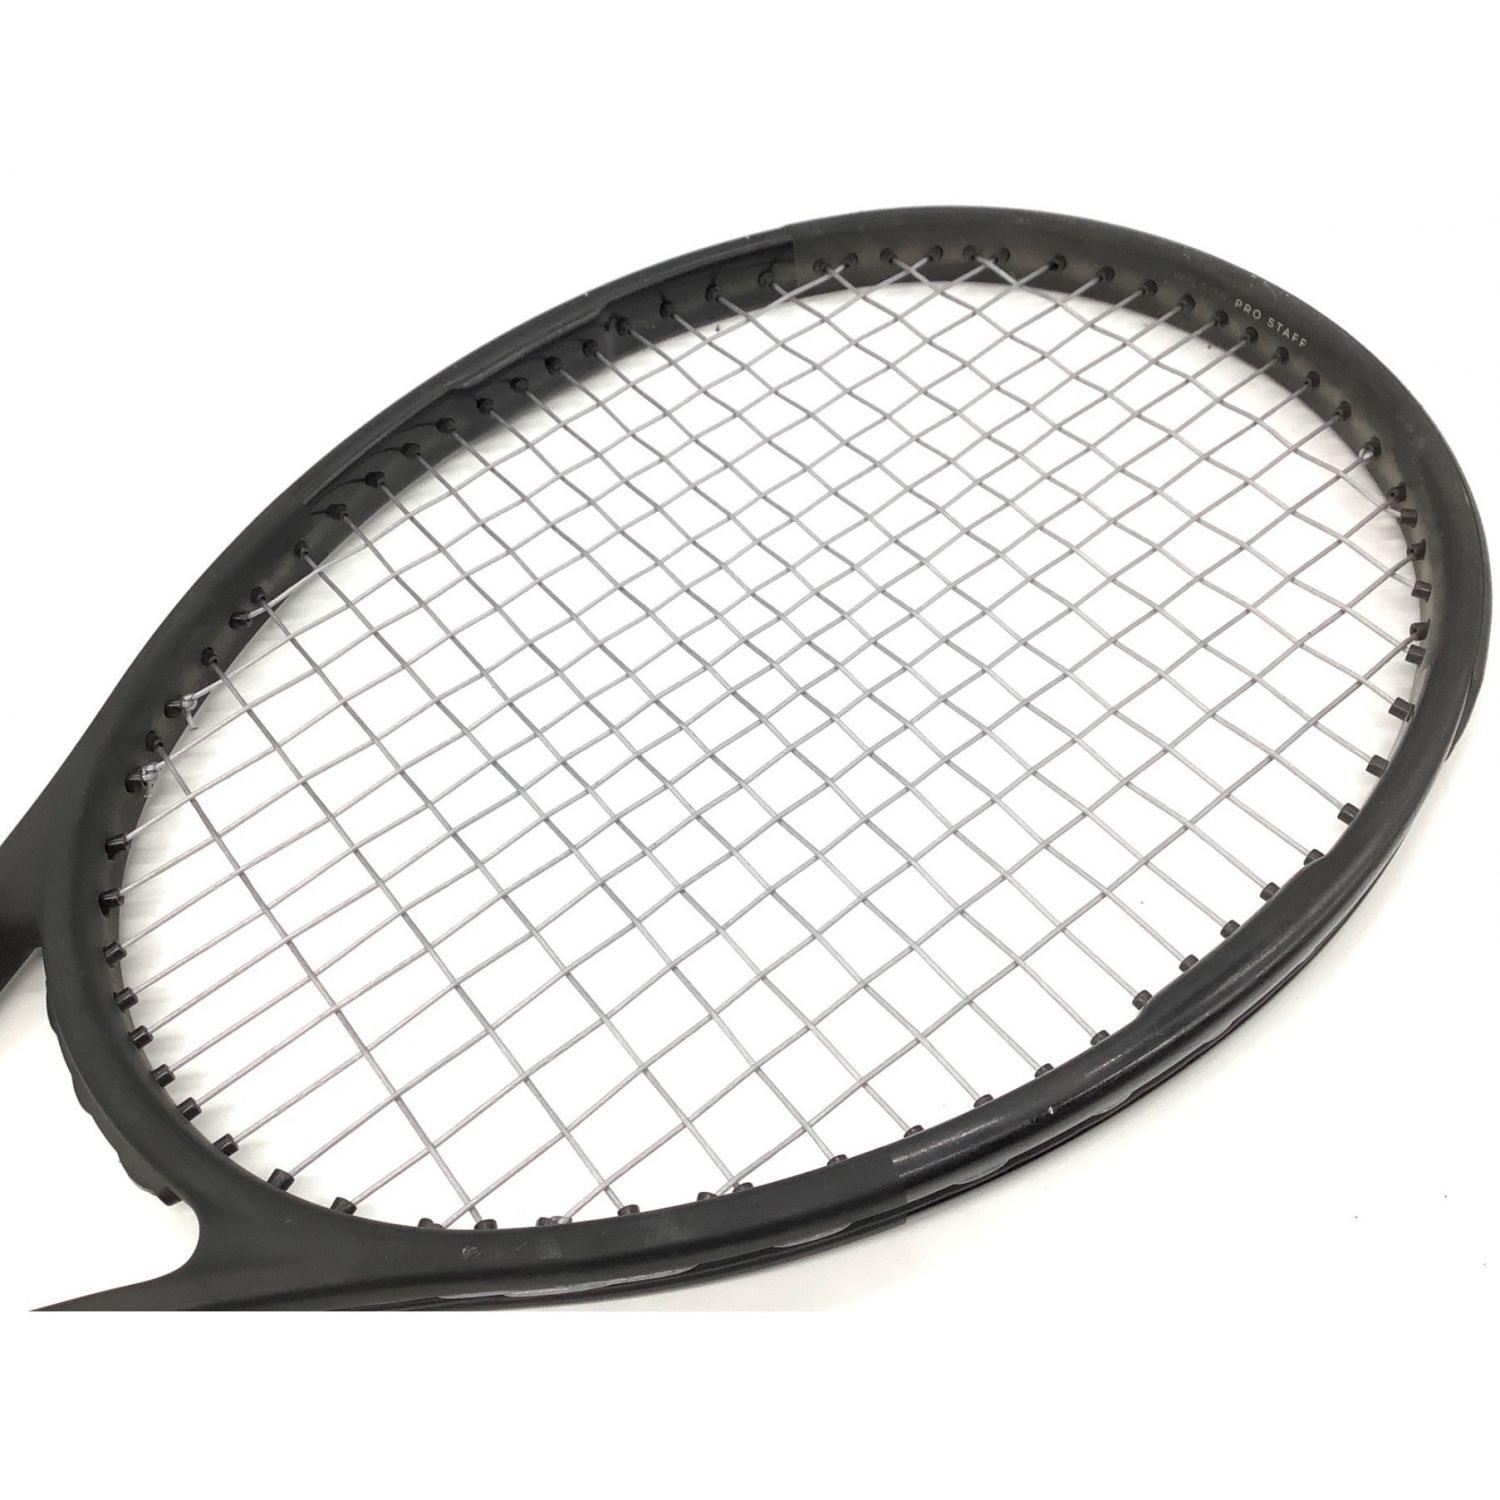 【テニスラケット】Wilson Prostaf97 V11.5